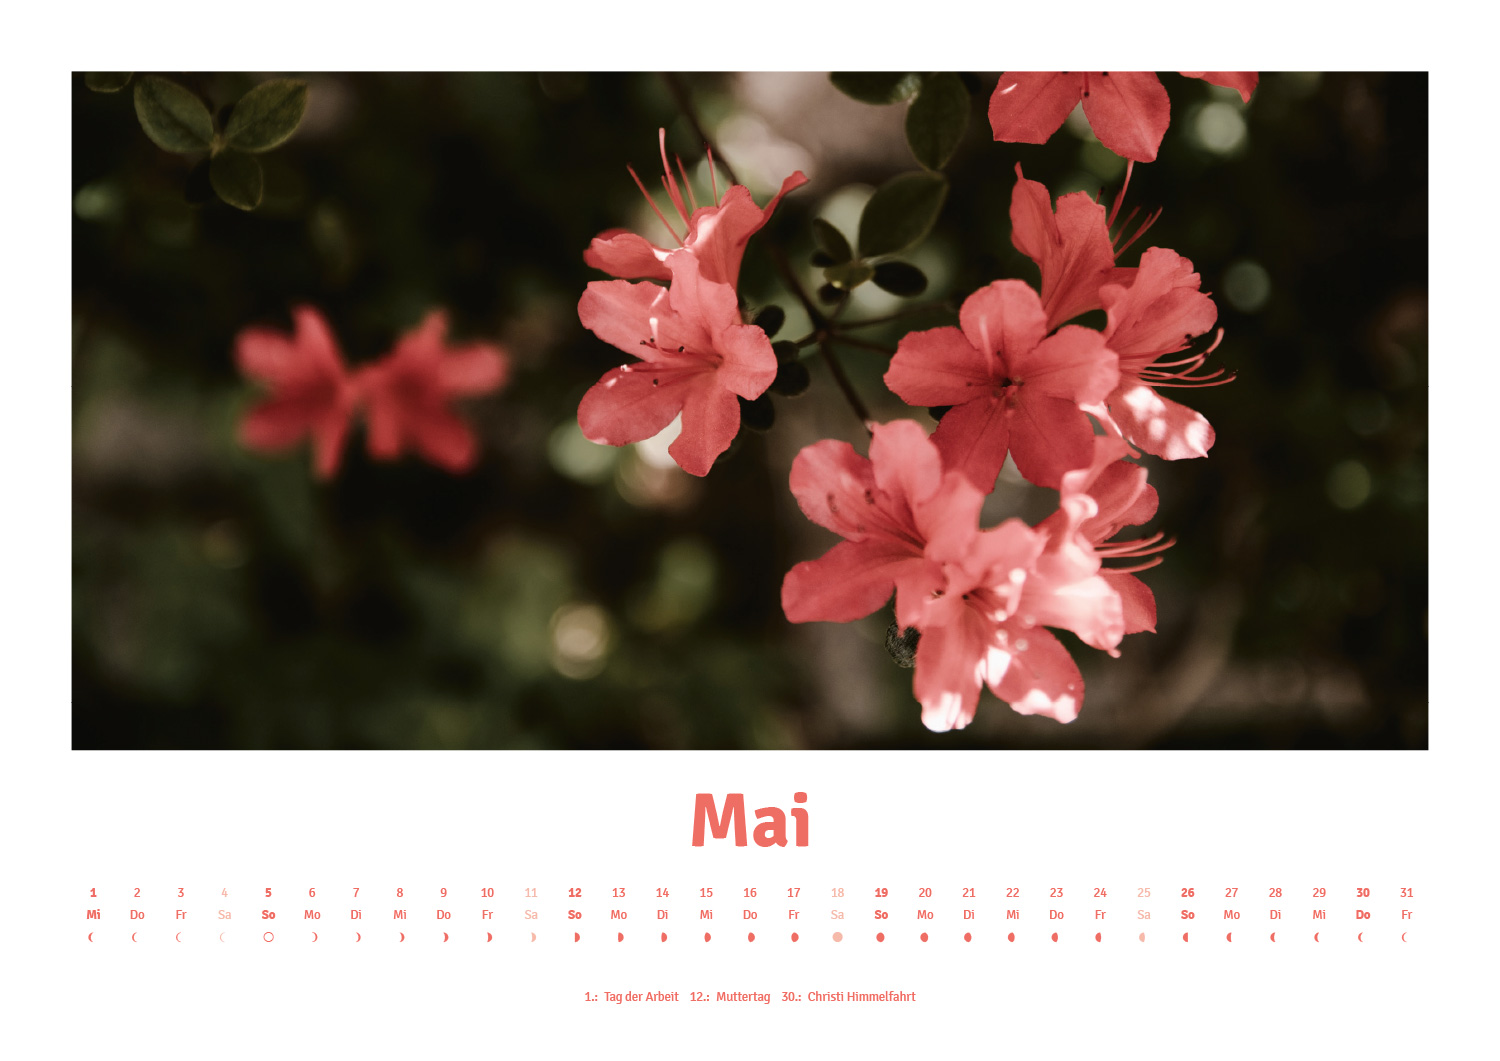 Calidario-PANTONE calendar 2019 in May with cherry blossom motif